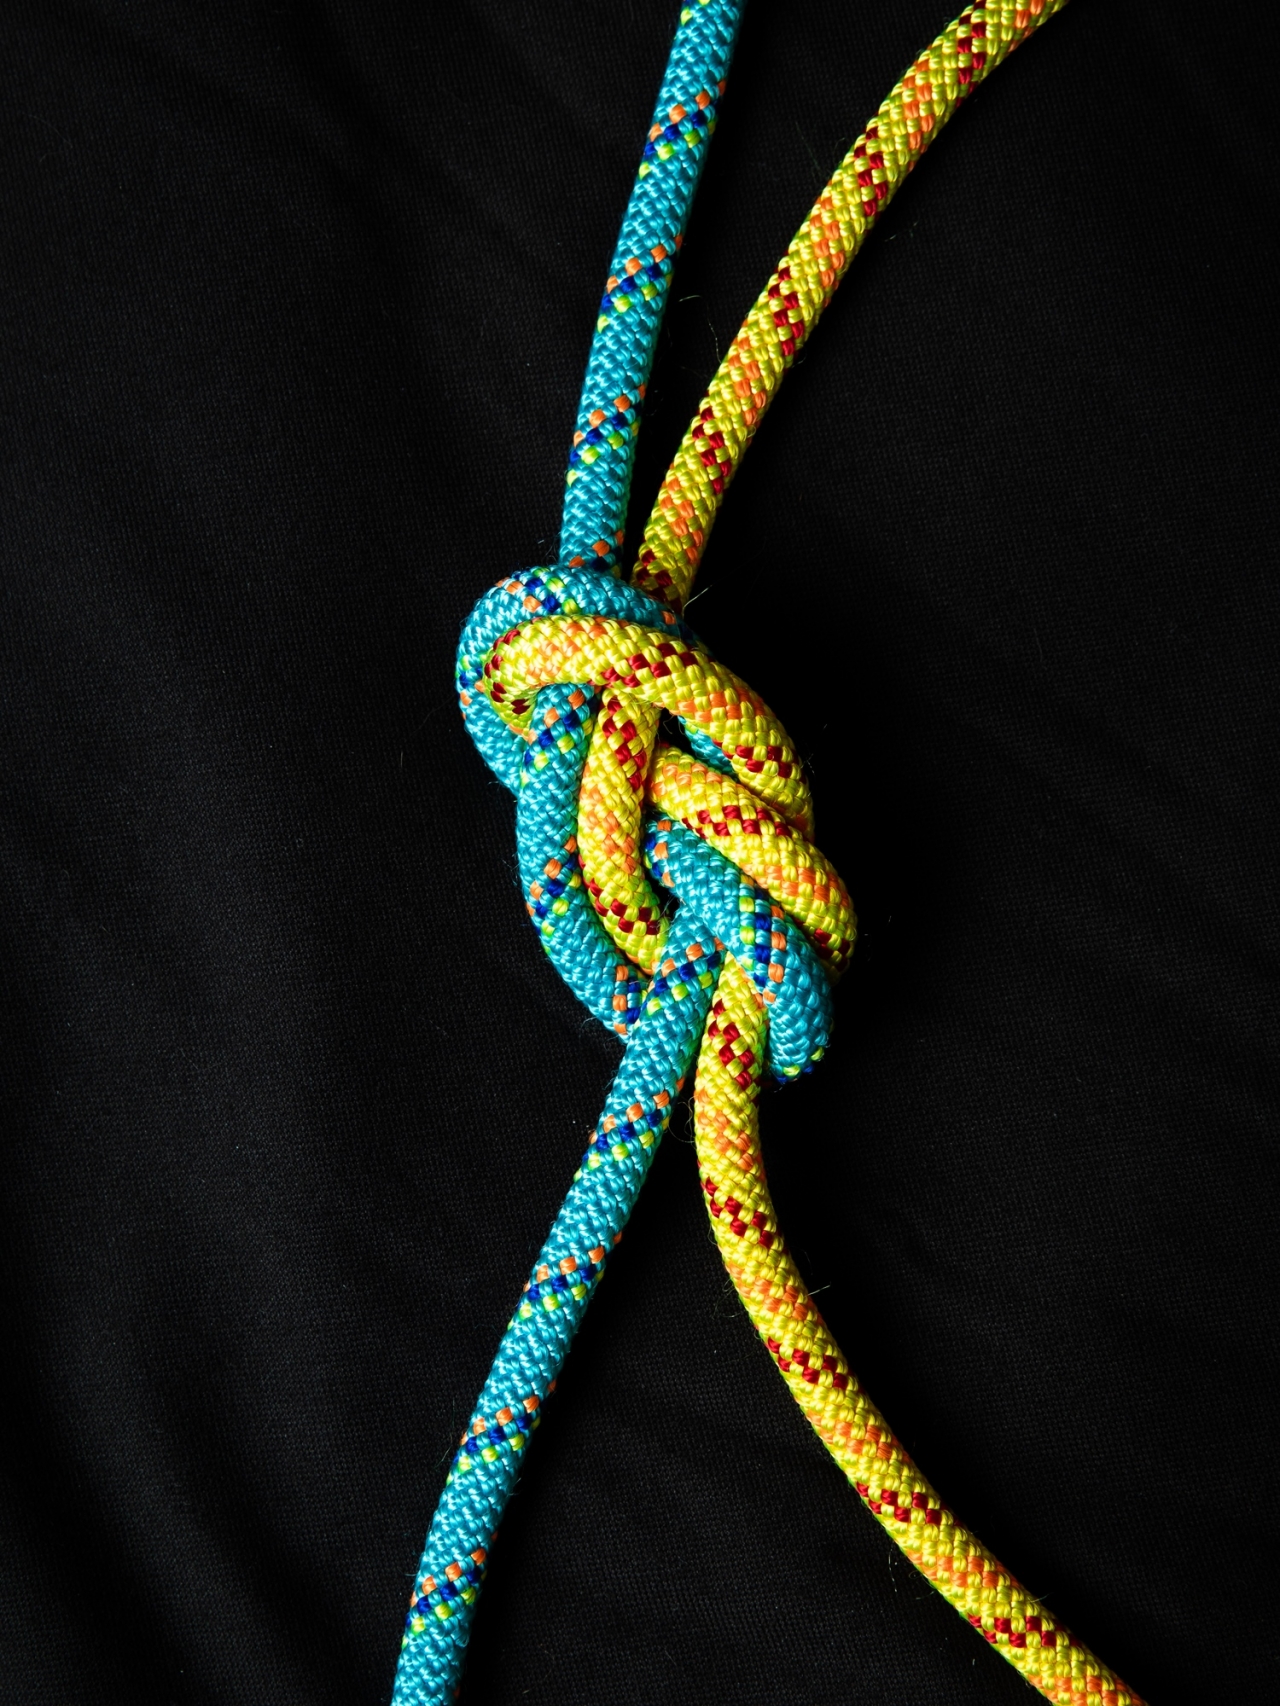 박현홍 대표가 직접 묶은 8자 매듭. 이 매듭은 각 줄을 잡아당길 때 더욱 강하게 묶인다. 멘토와 멘티는 누구 하나가 끌어주는 관계가 아니라 서로에게 영향을 주는 관계다. [사진=오상민 작가]